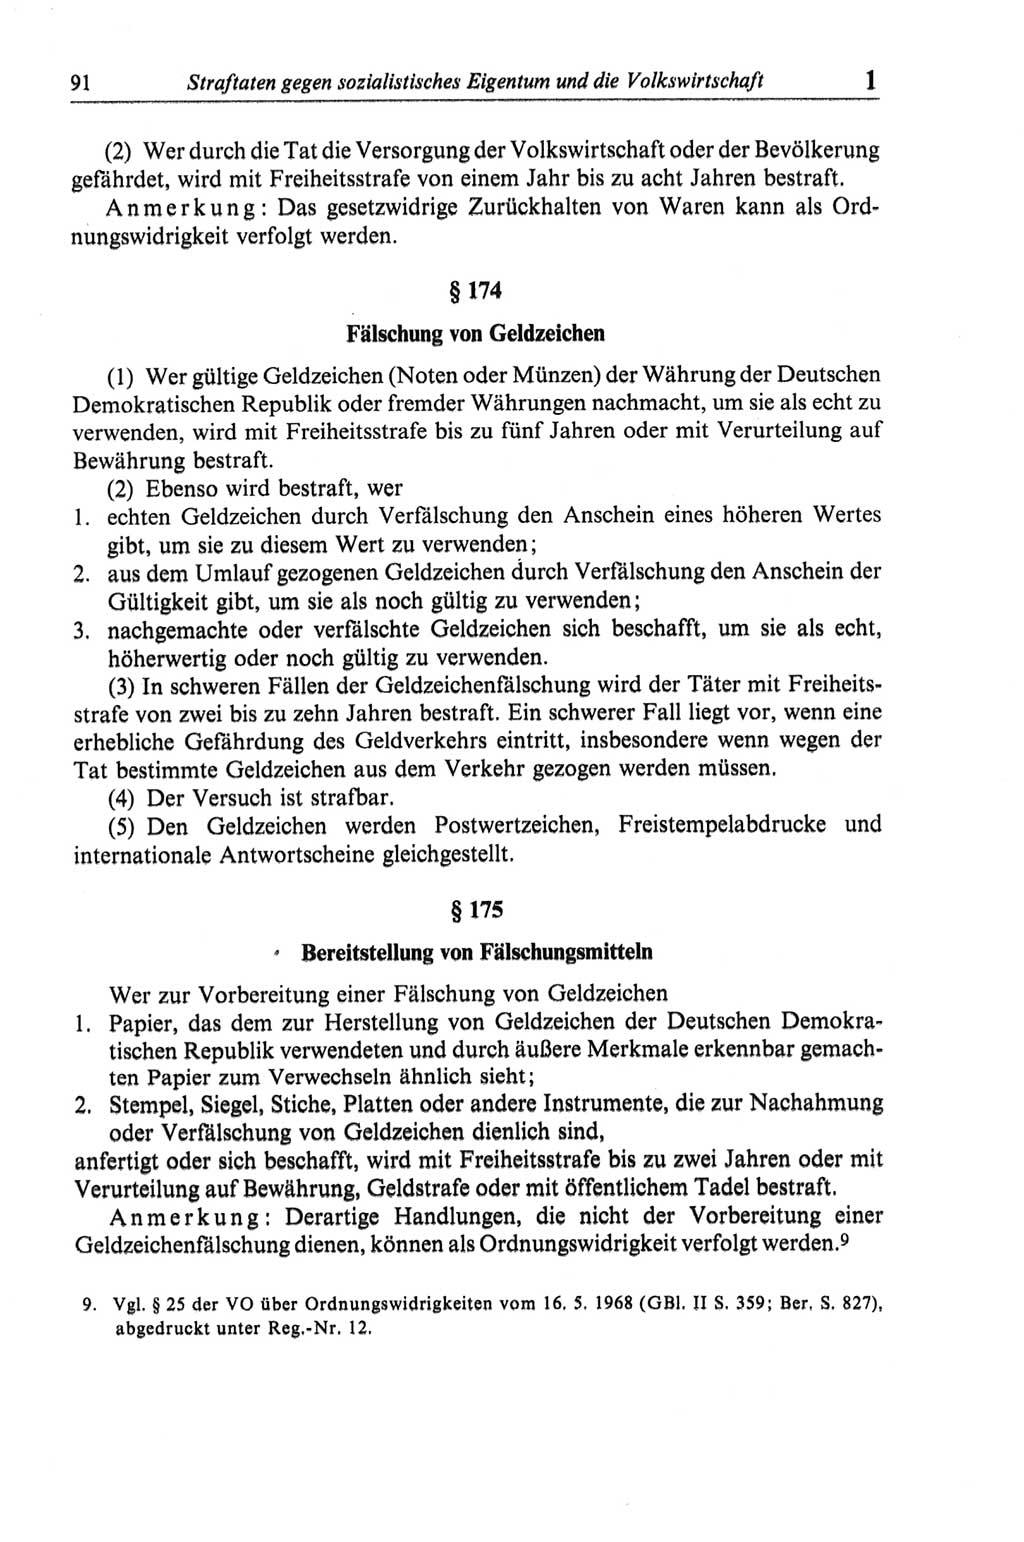 Strafgesetzbuch (StGB) der Deutschen Demokratischen Republik (DDR) und angrenzende Gesetze und Bestimmungen 1968, Seite 91 (StGB Ges. Best. DDR 1968, S. 91)